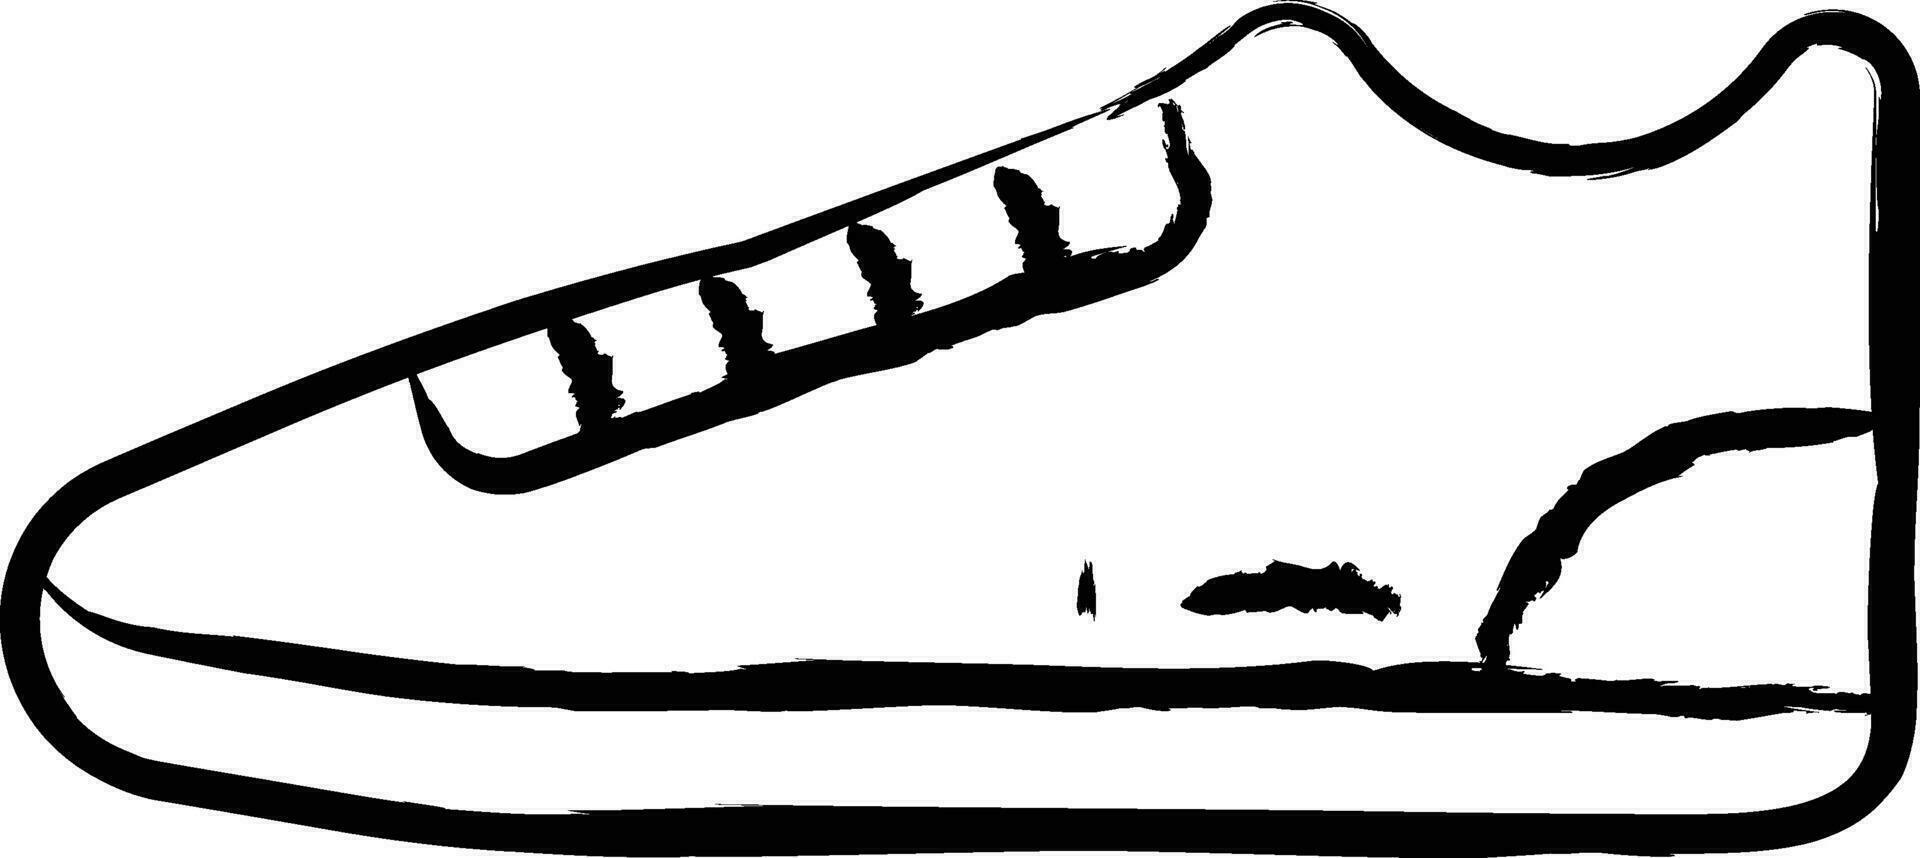 zapatilla de deporte zapato mano dibujado vector ilustración